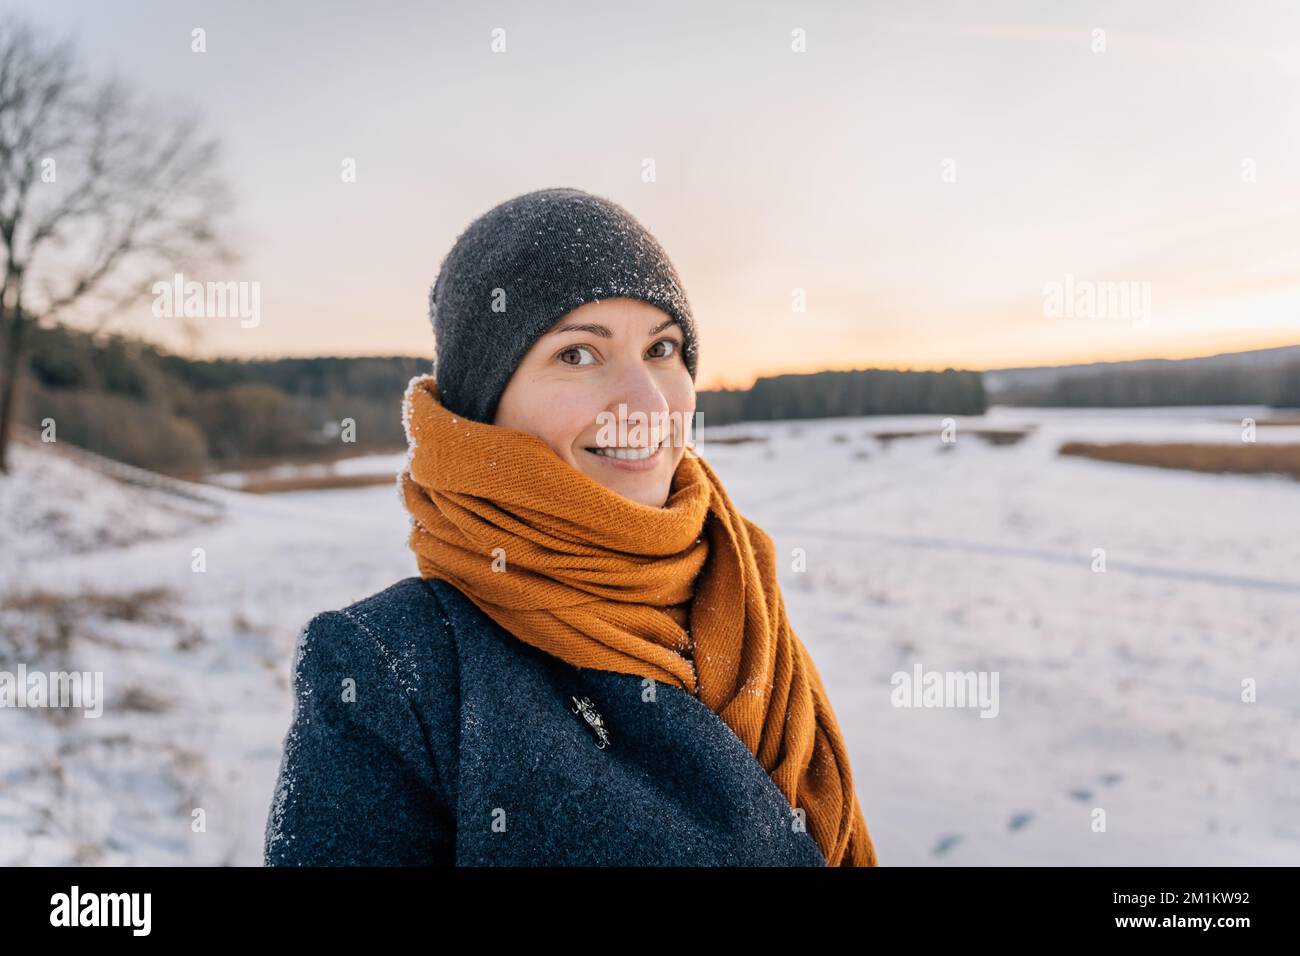 Retrato de una joven con ropa de invierno y un sombrero envuelto en una bufanda con una gran sonrisa Foto de stock